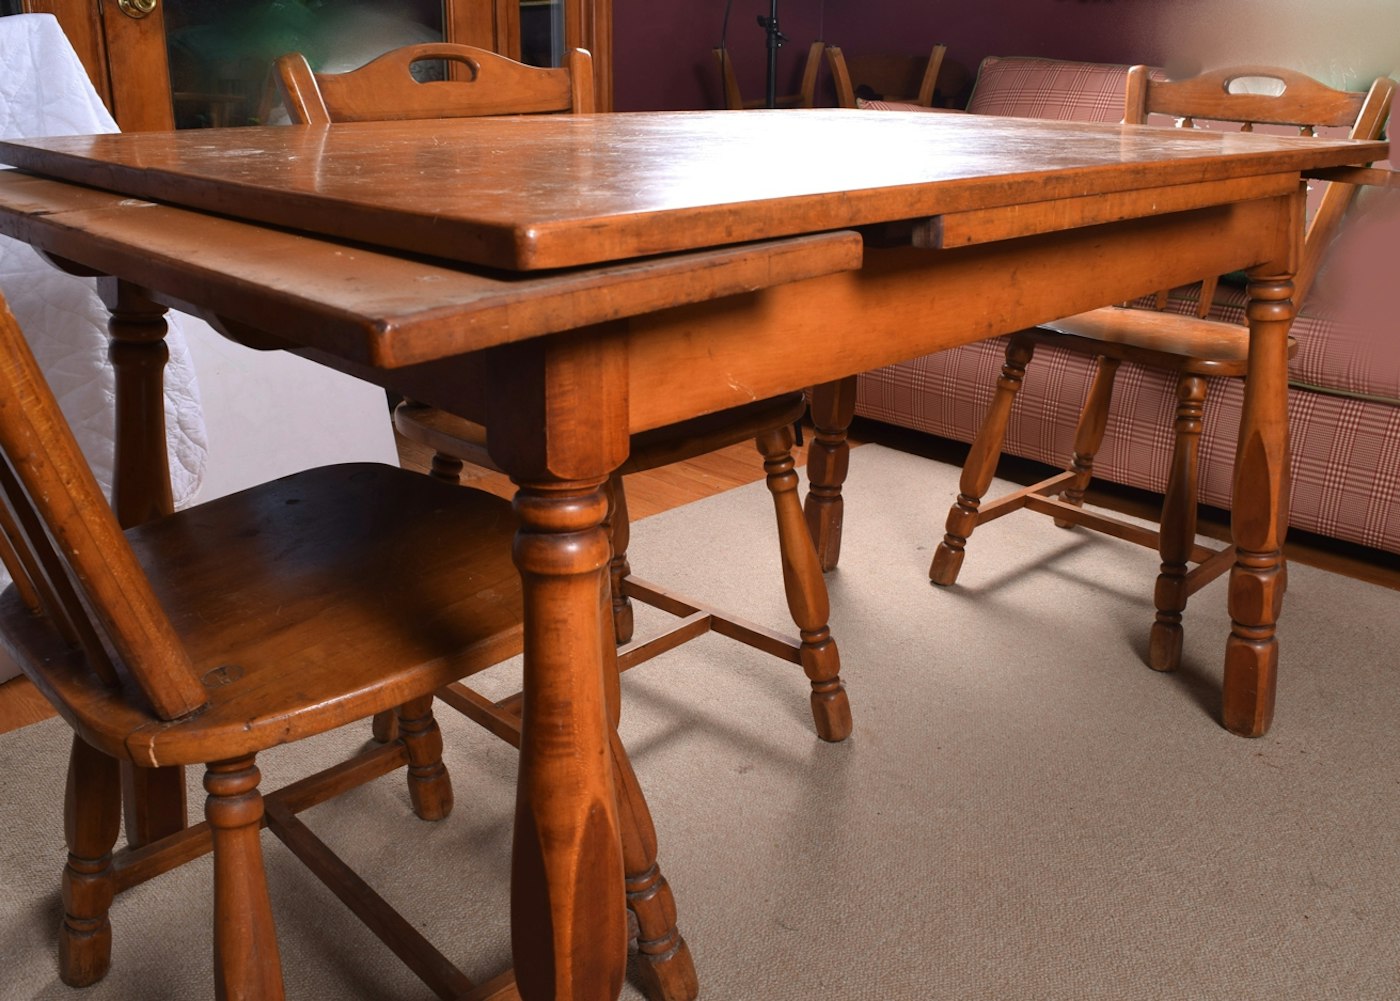 1940 maple kitchen table